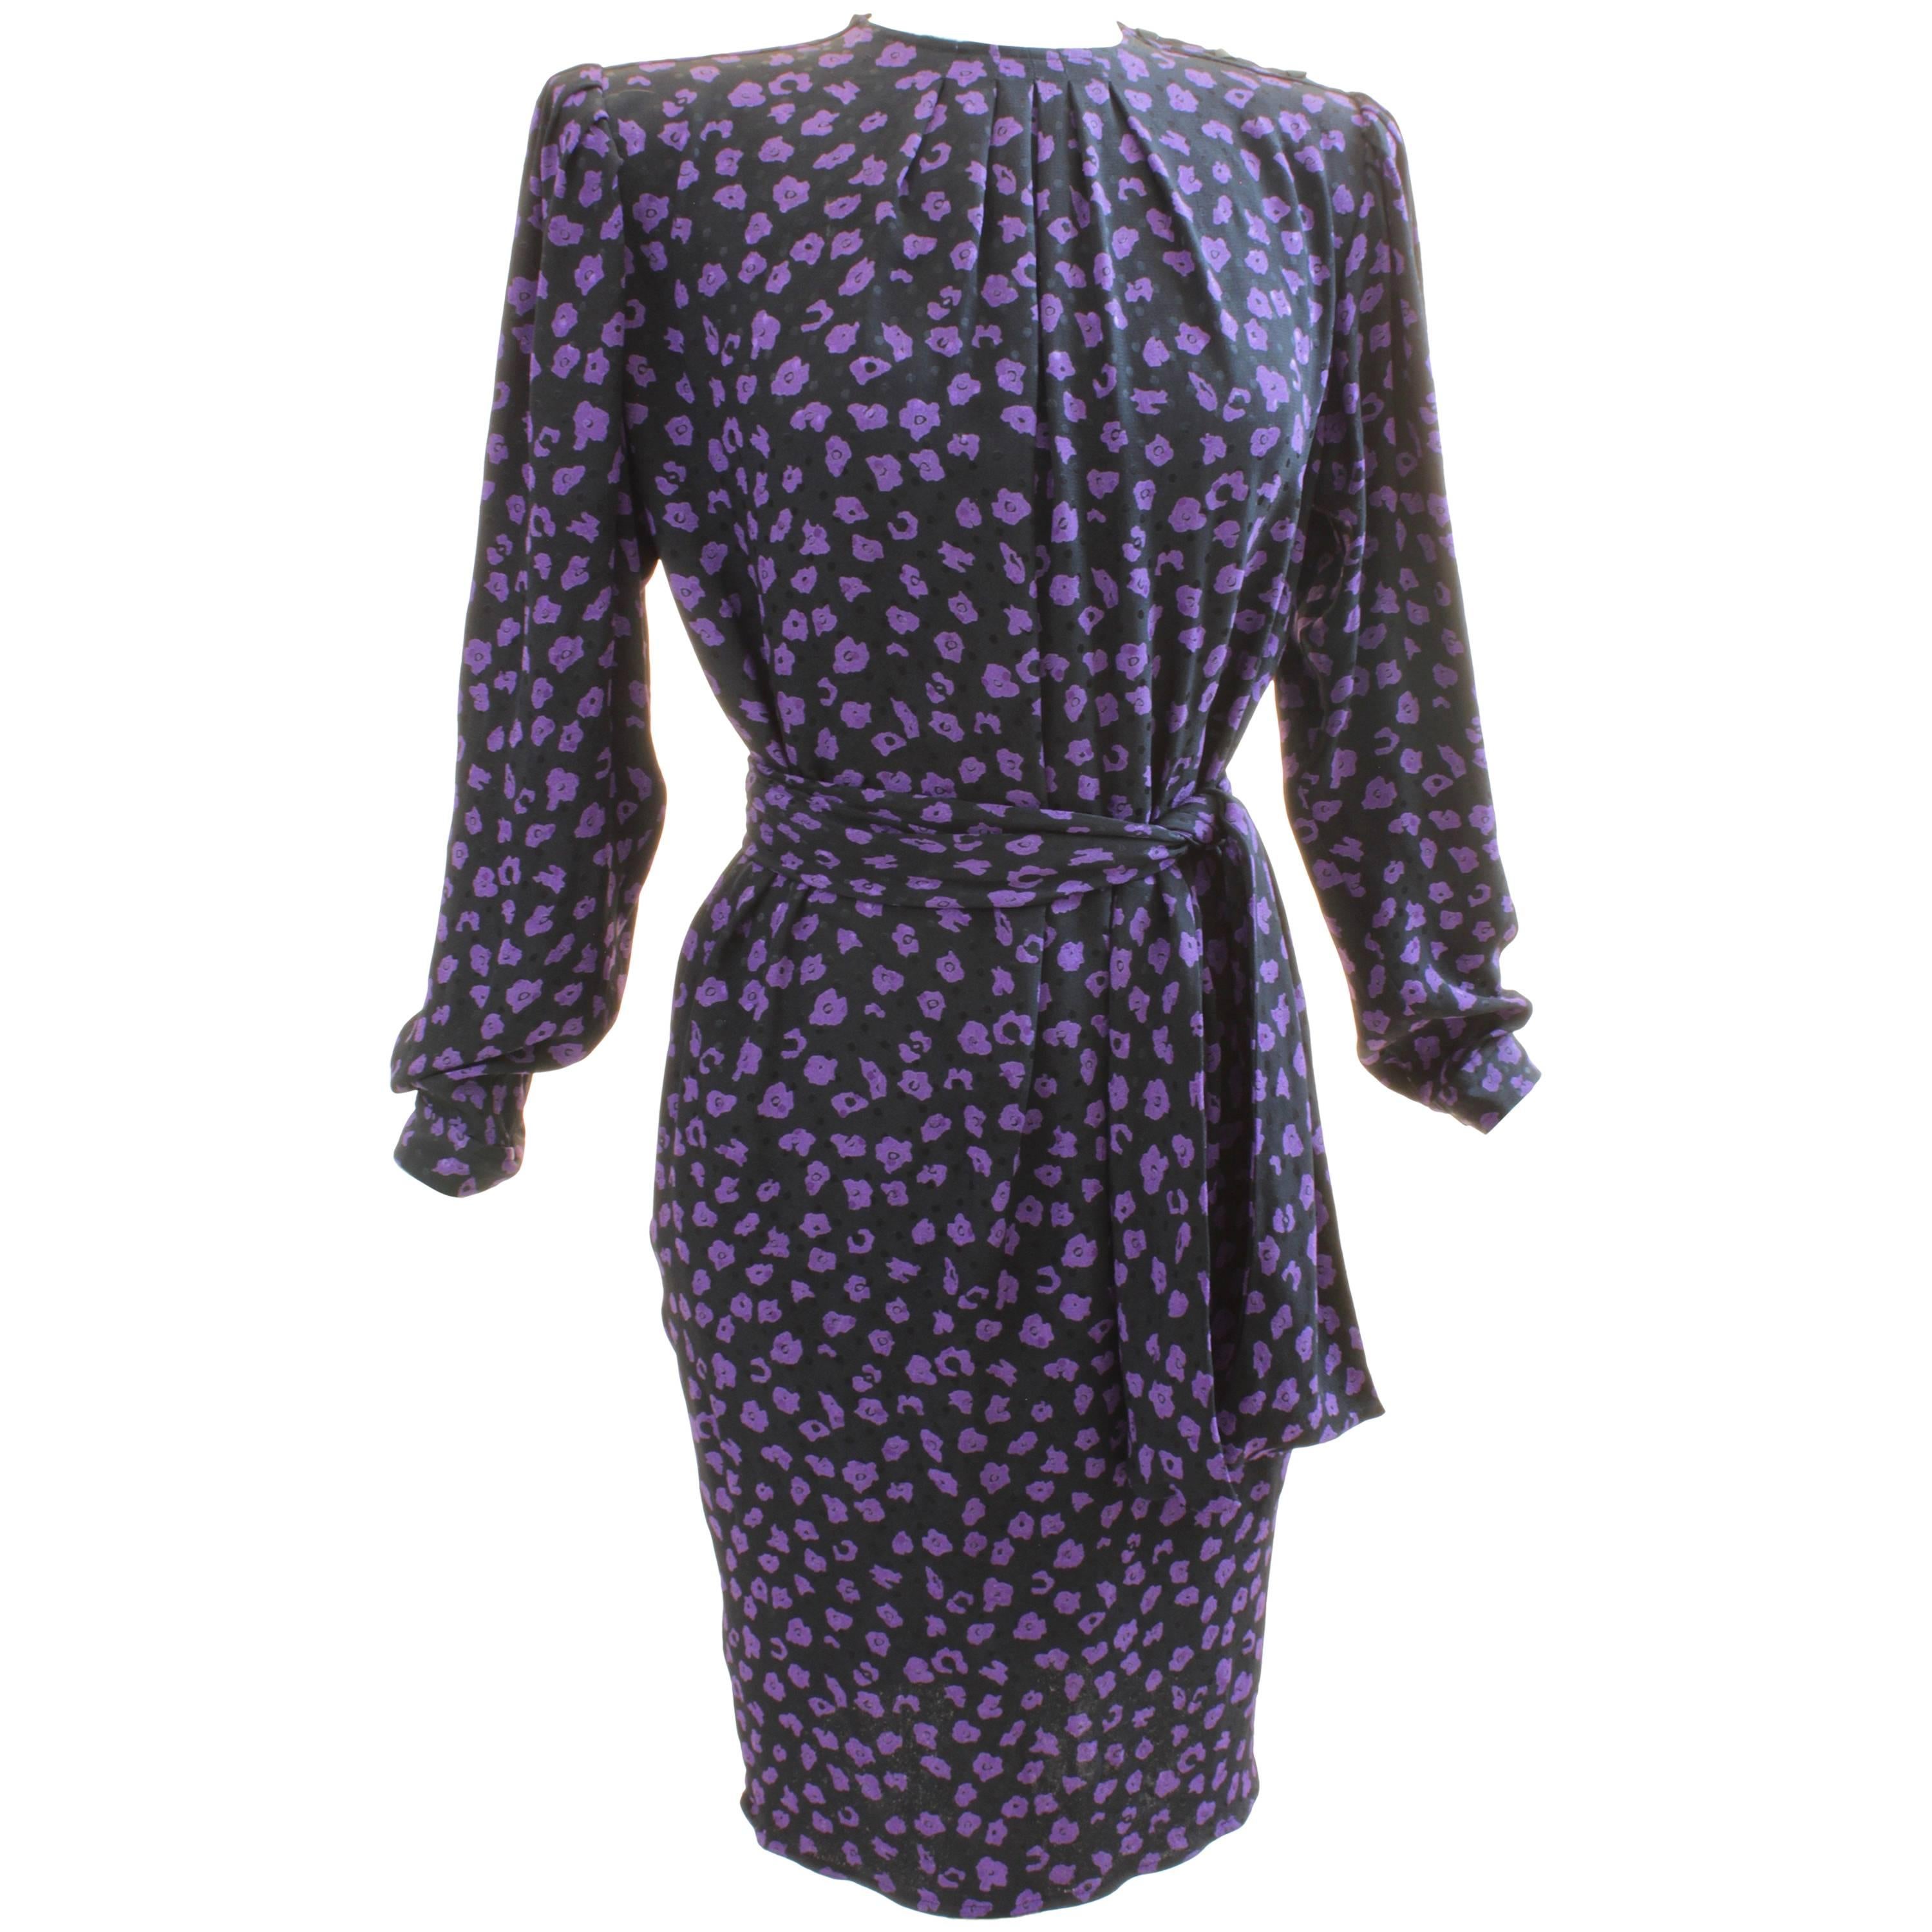 Vintage Ungaro Belted Dress Silk Jacquard Purple Floral on Black Size 10